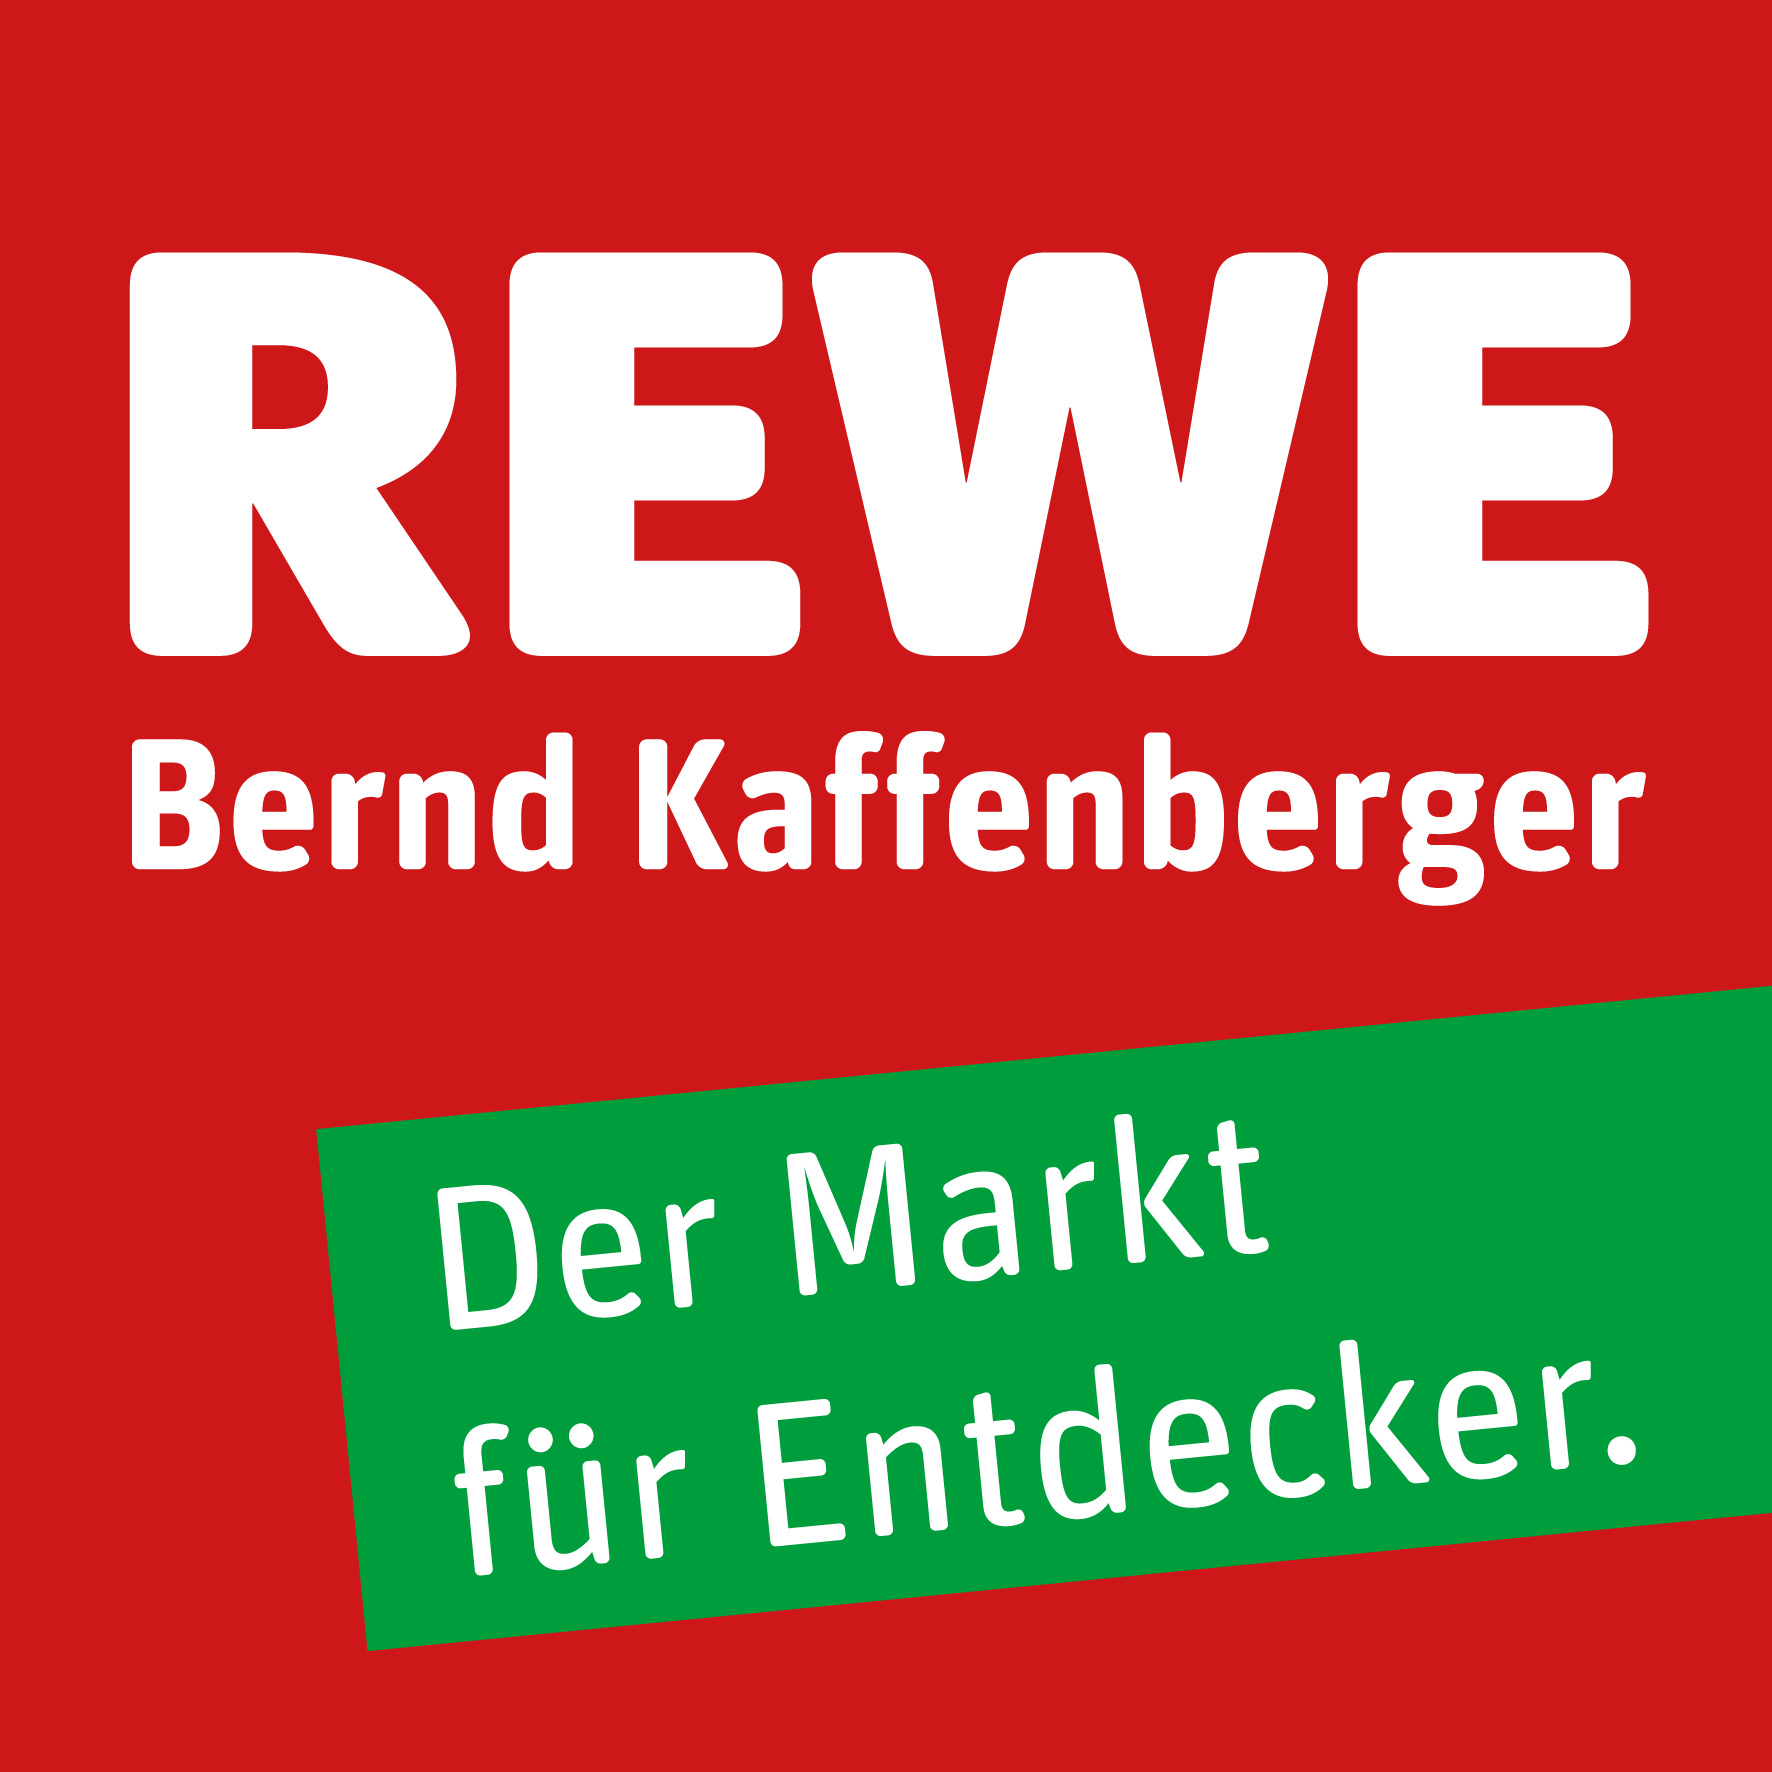 REWE Bernd Kaffenberger